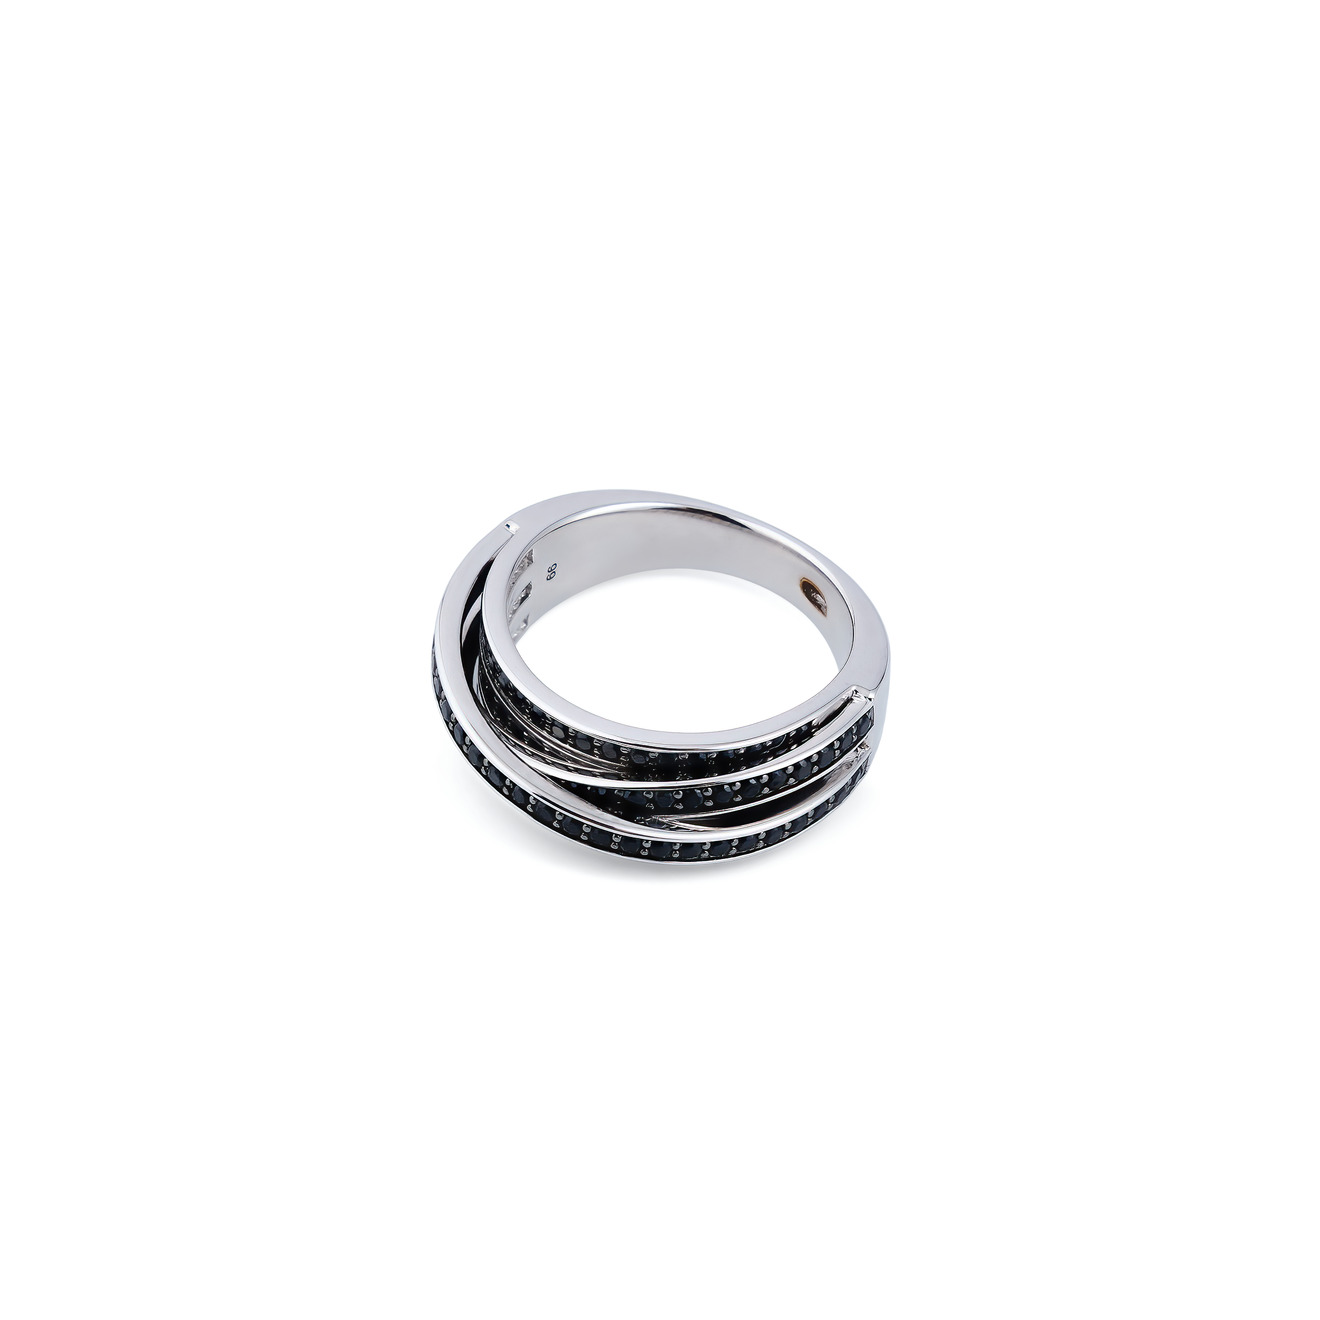 Tom Wood Тонкое кольцо из серебра Orb с черной шпинелью (M) tom wood кольцо из серебра sleek ring с черной шпинелью